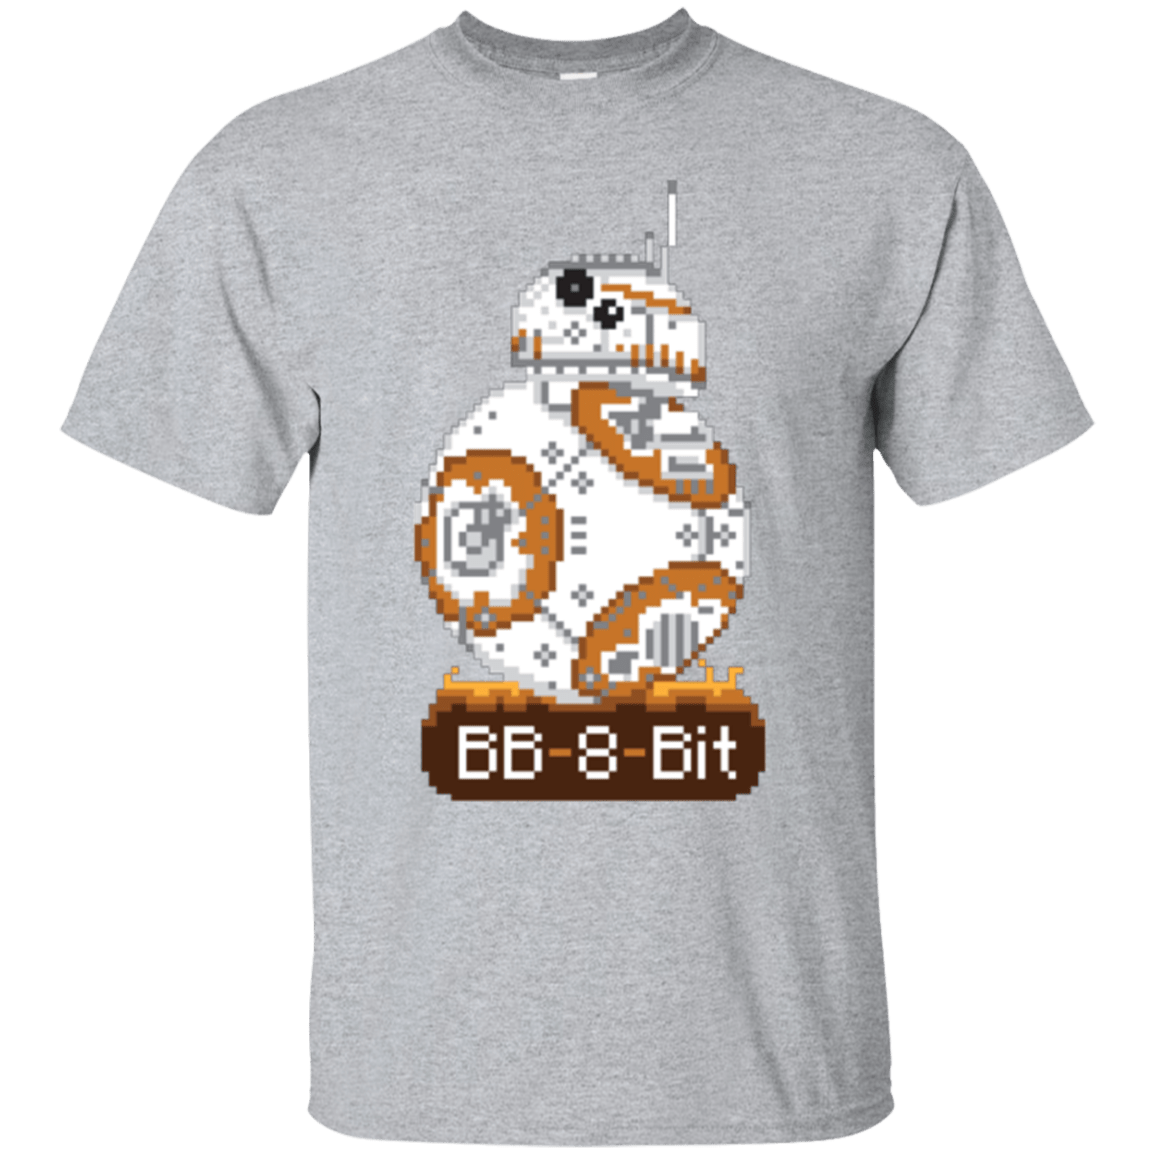 T-Shirts Sport Grey / Small BB8Bit T-Shirt